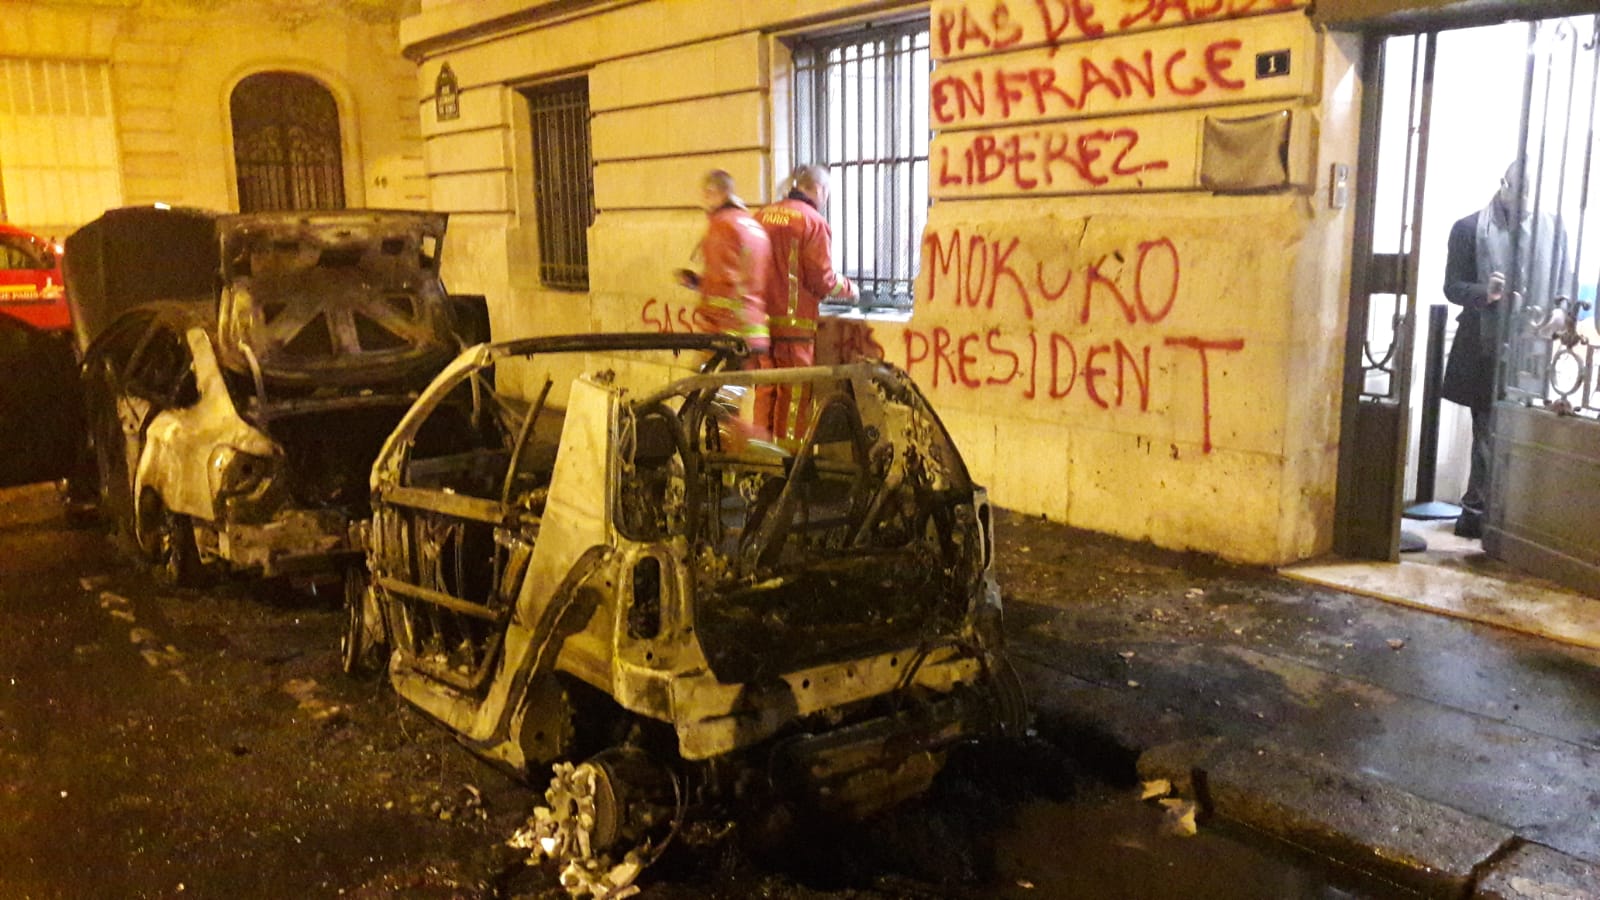 Arrêt sur images : L’ambassade du Congo en France vandalisée